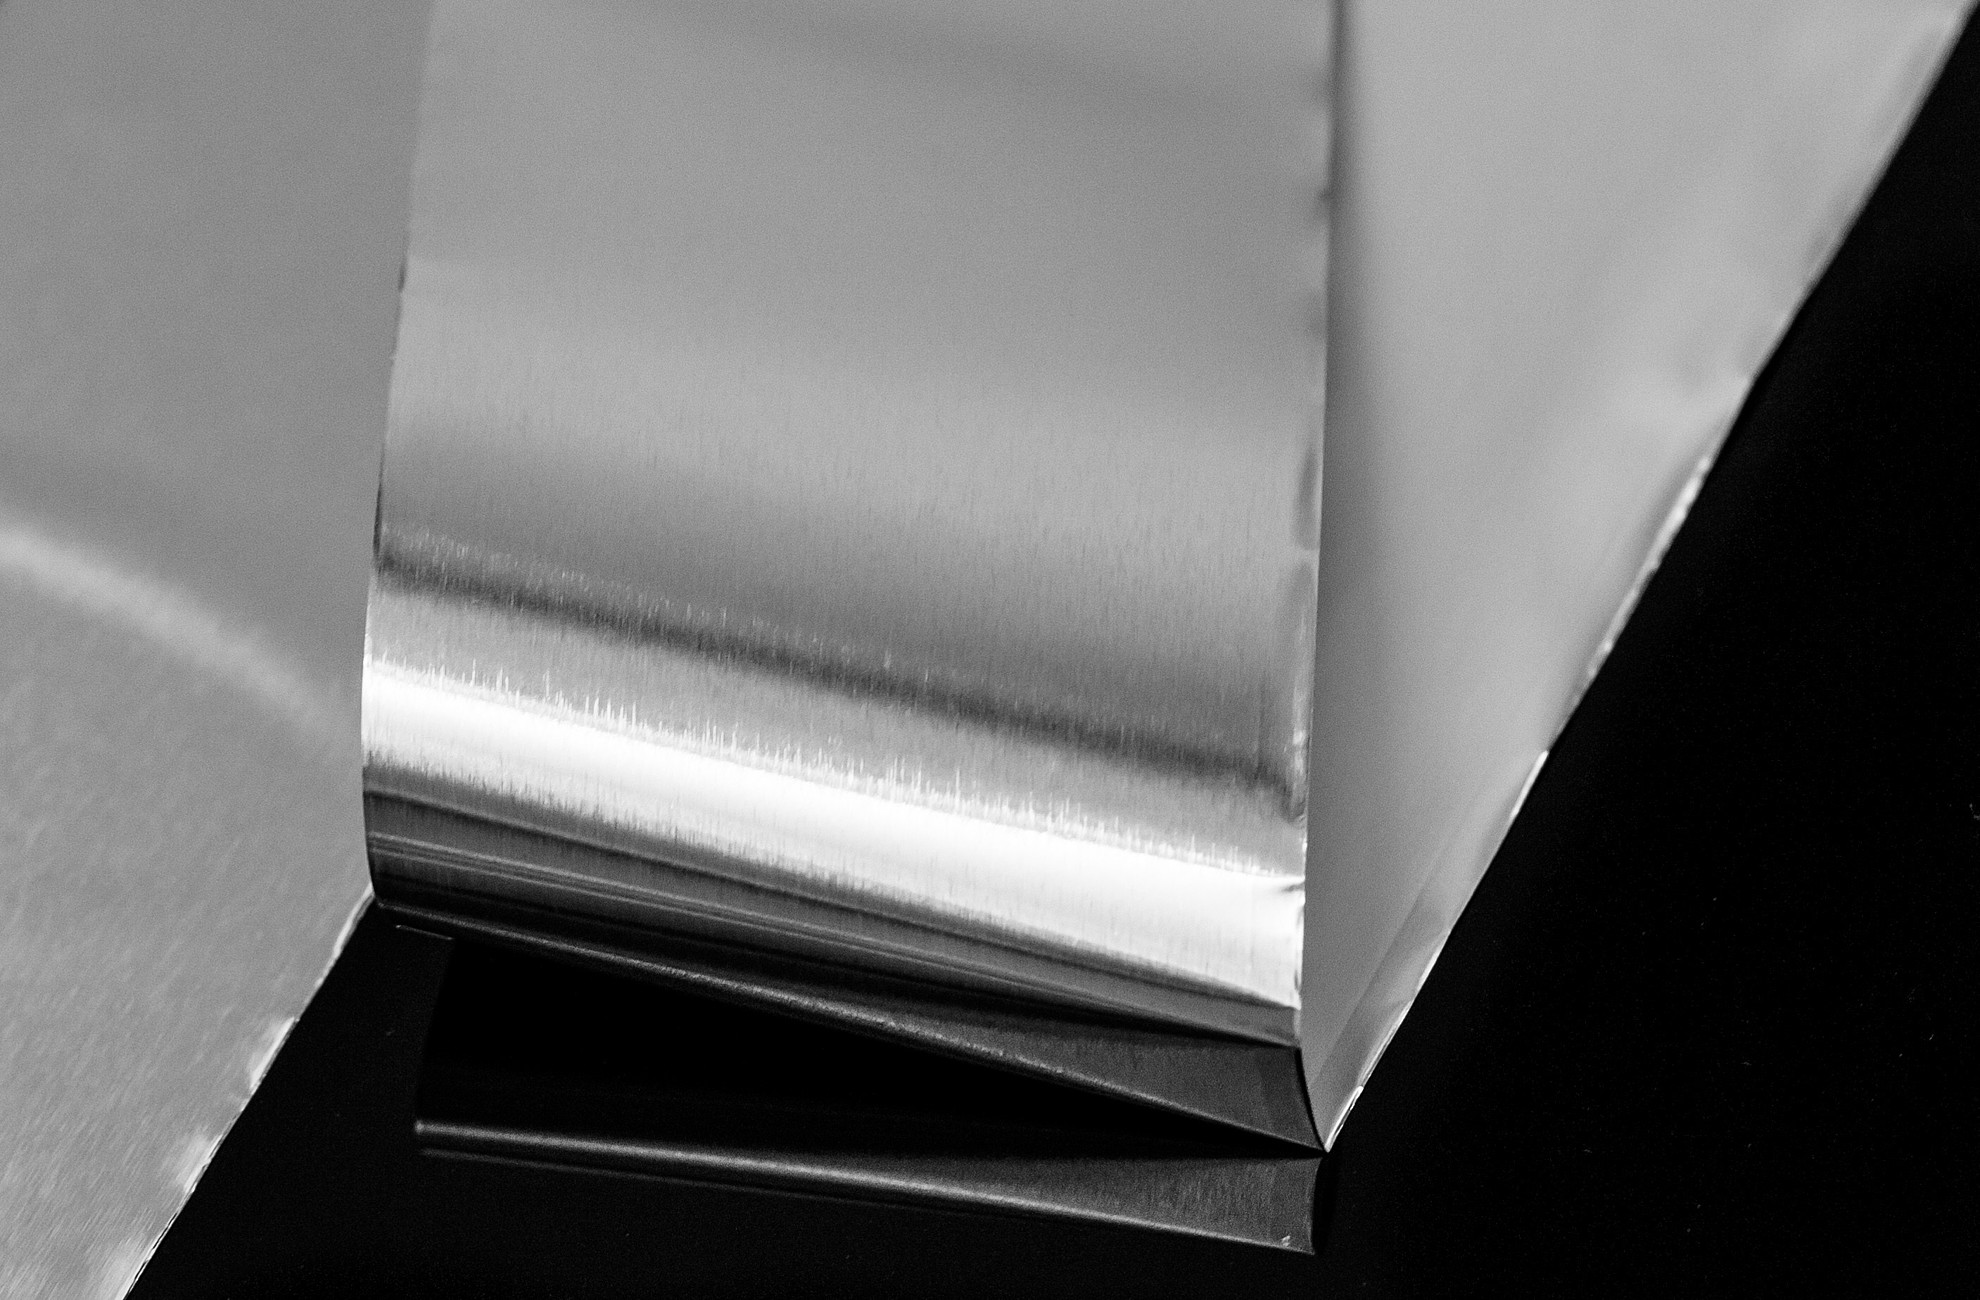 épaisseur 0,5 mm Aluminium Peau Rouleau pour Le Bricolage Matériel Pièces de Machines Longueur 1000 mm Dumadf 1060 Aluminium Pur Roll 